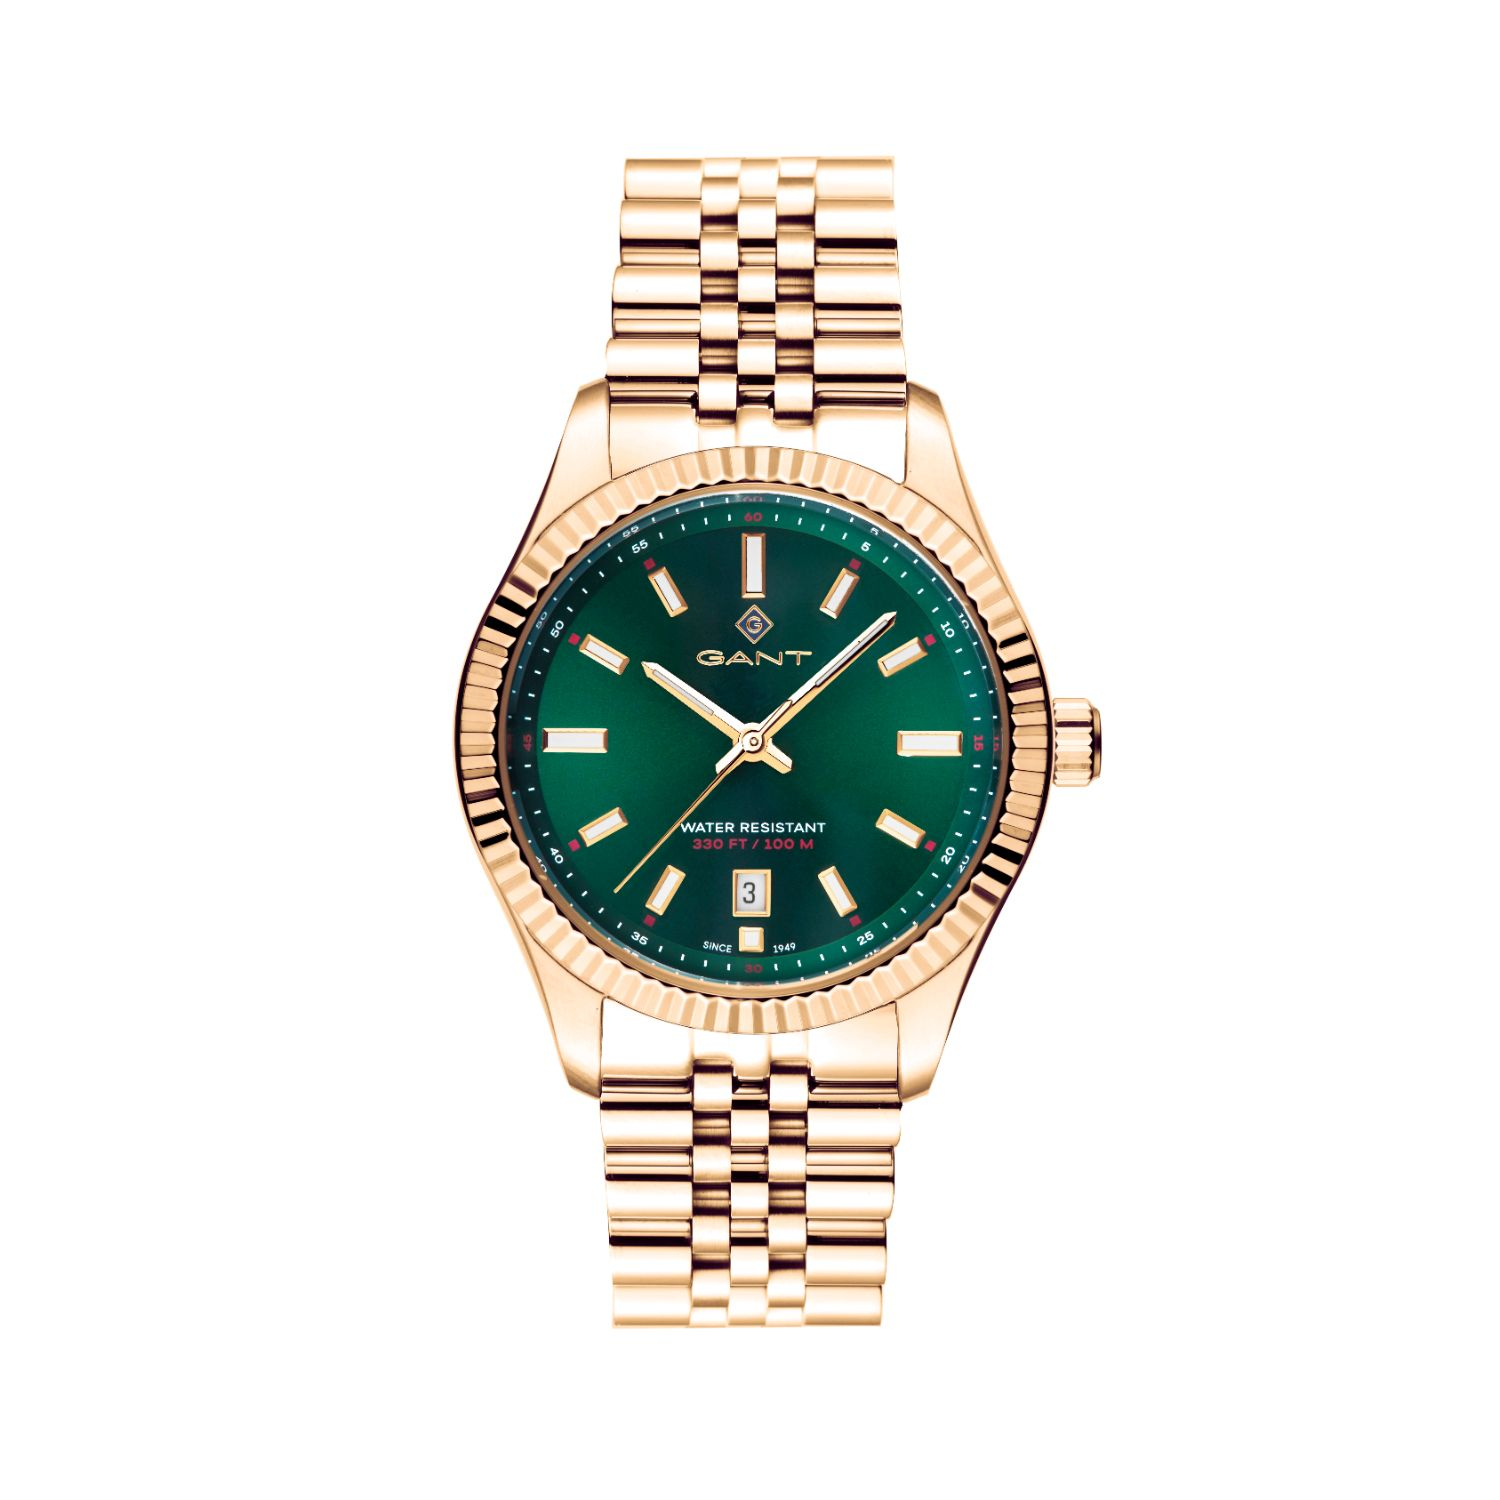 Γυναικείο ρολόι Gant από χρυσό ανοξείδωτο ατσάλι με πράσινο καντράν και μπρασελέ.